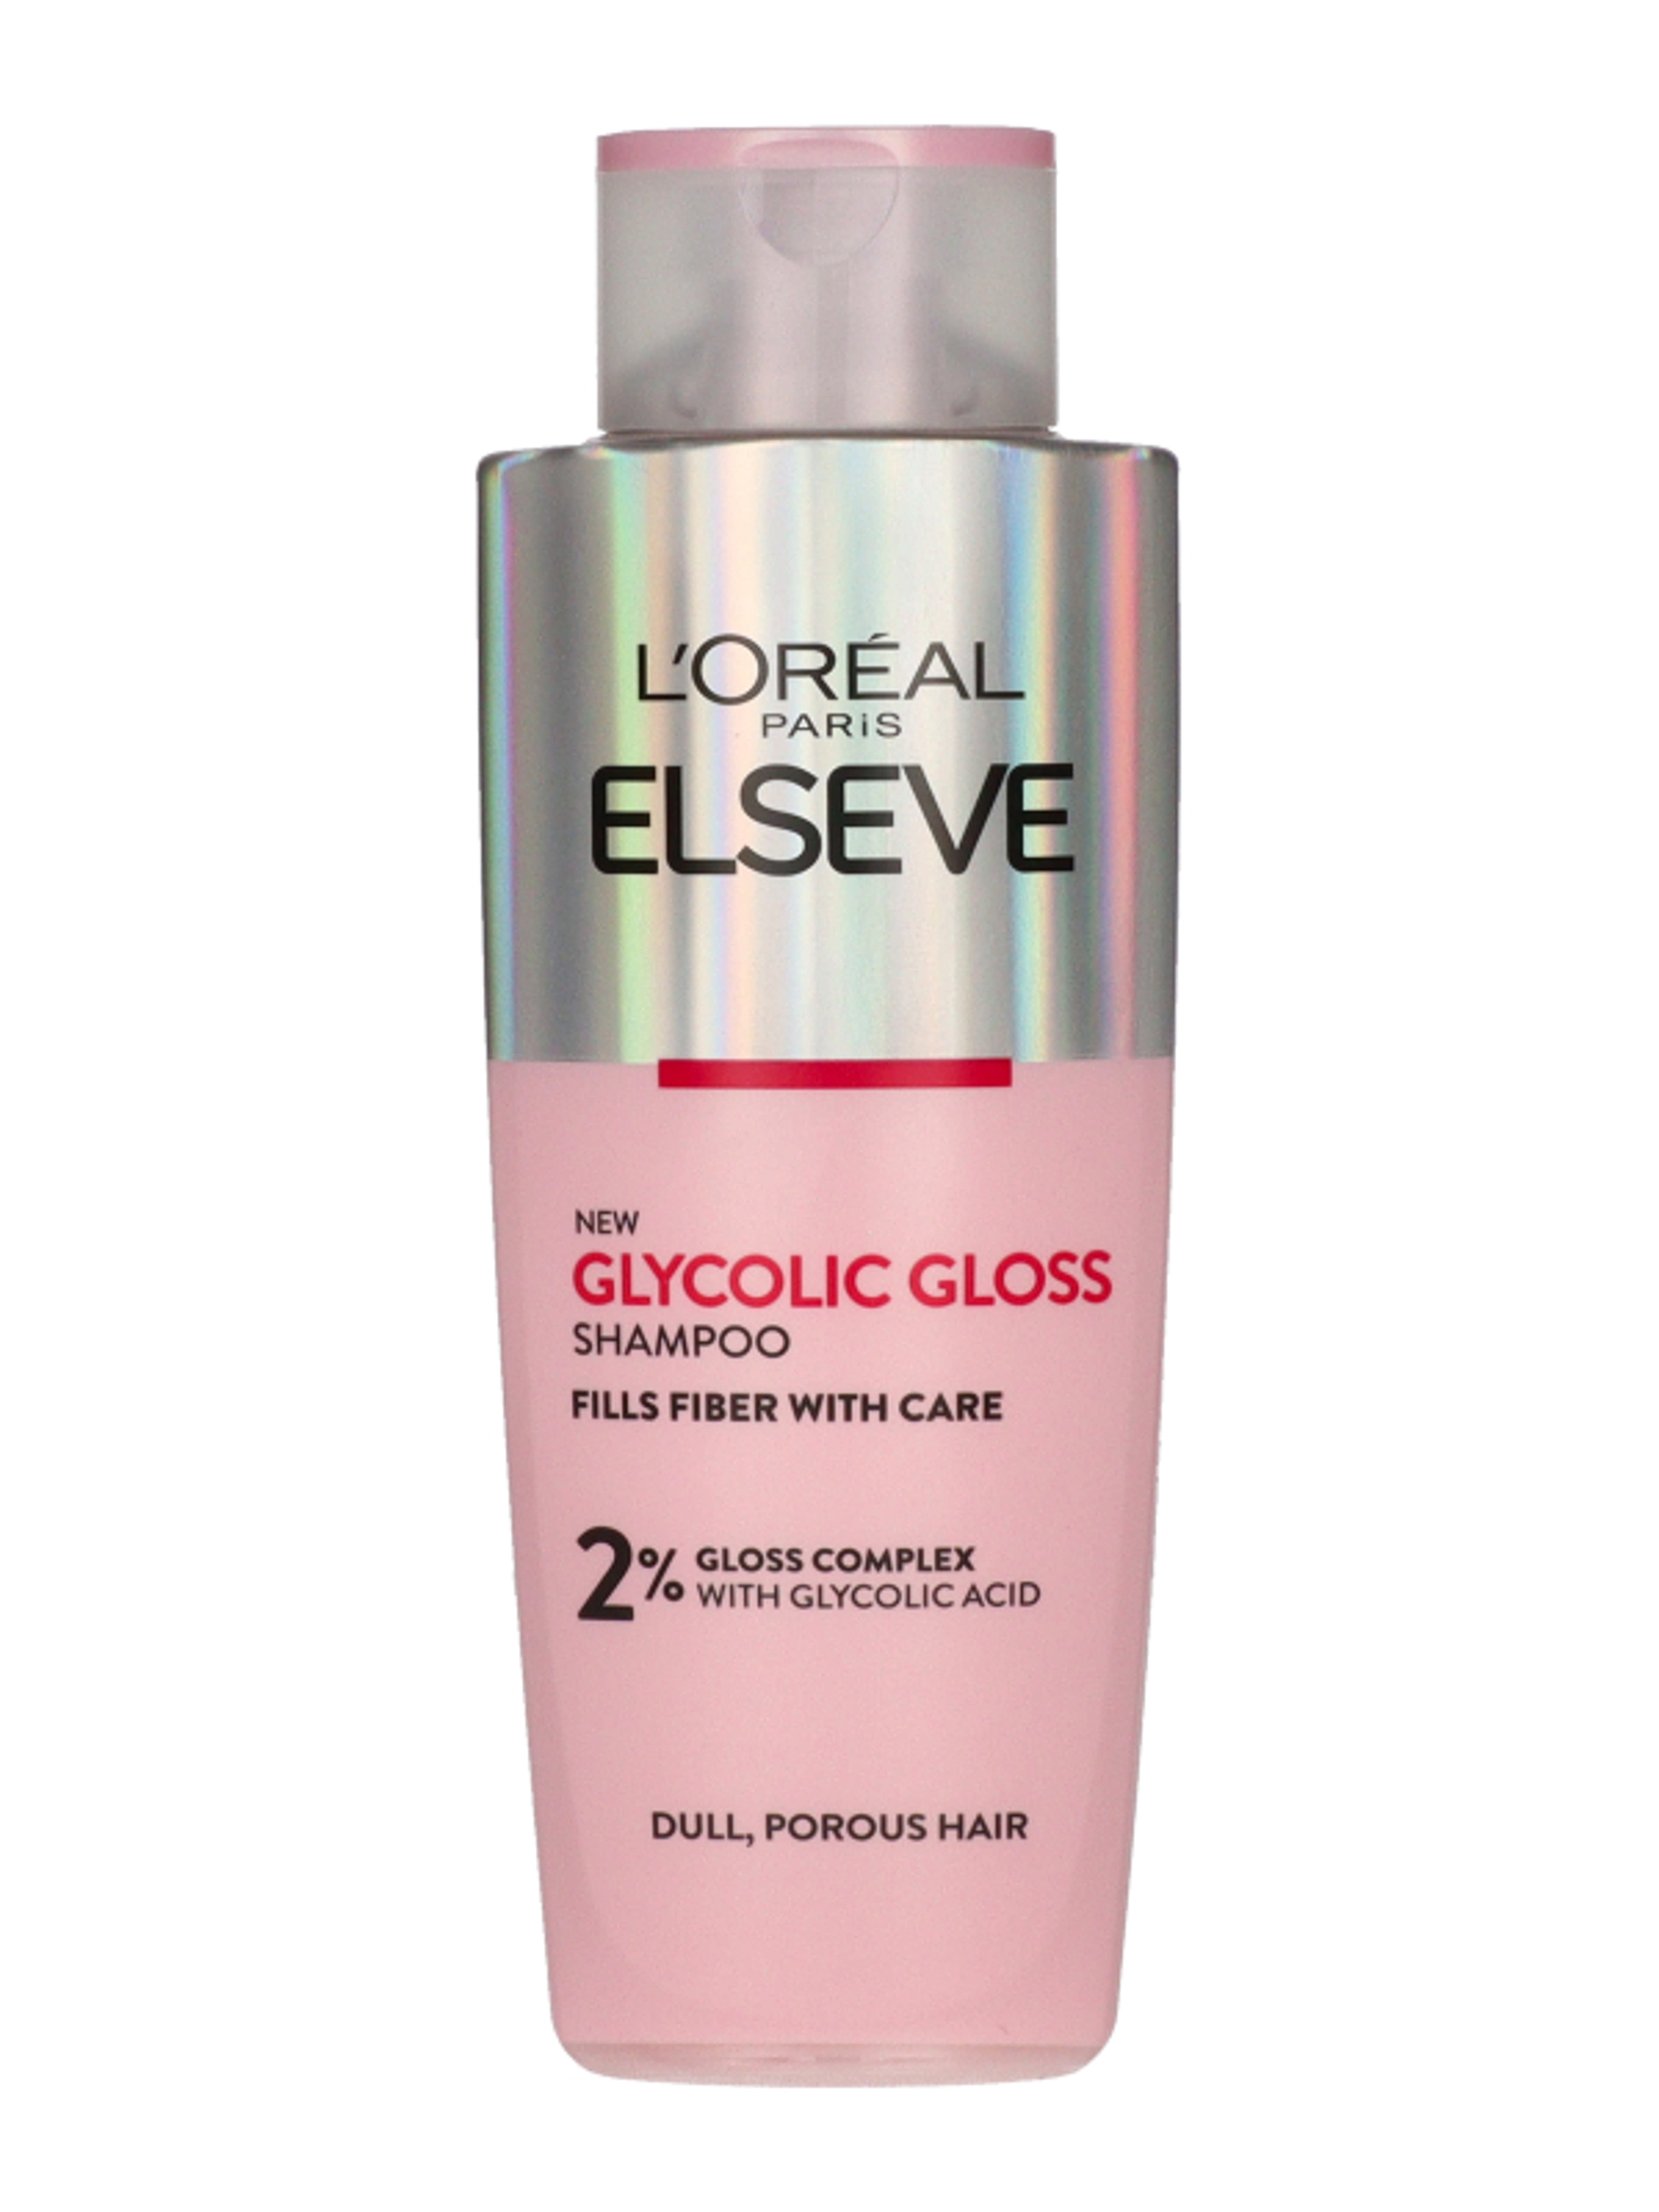 L'Oréal Paris Elseve Glycolic Gloss sampon - 200 ml-2